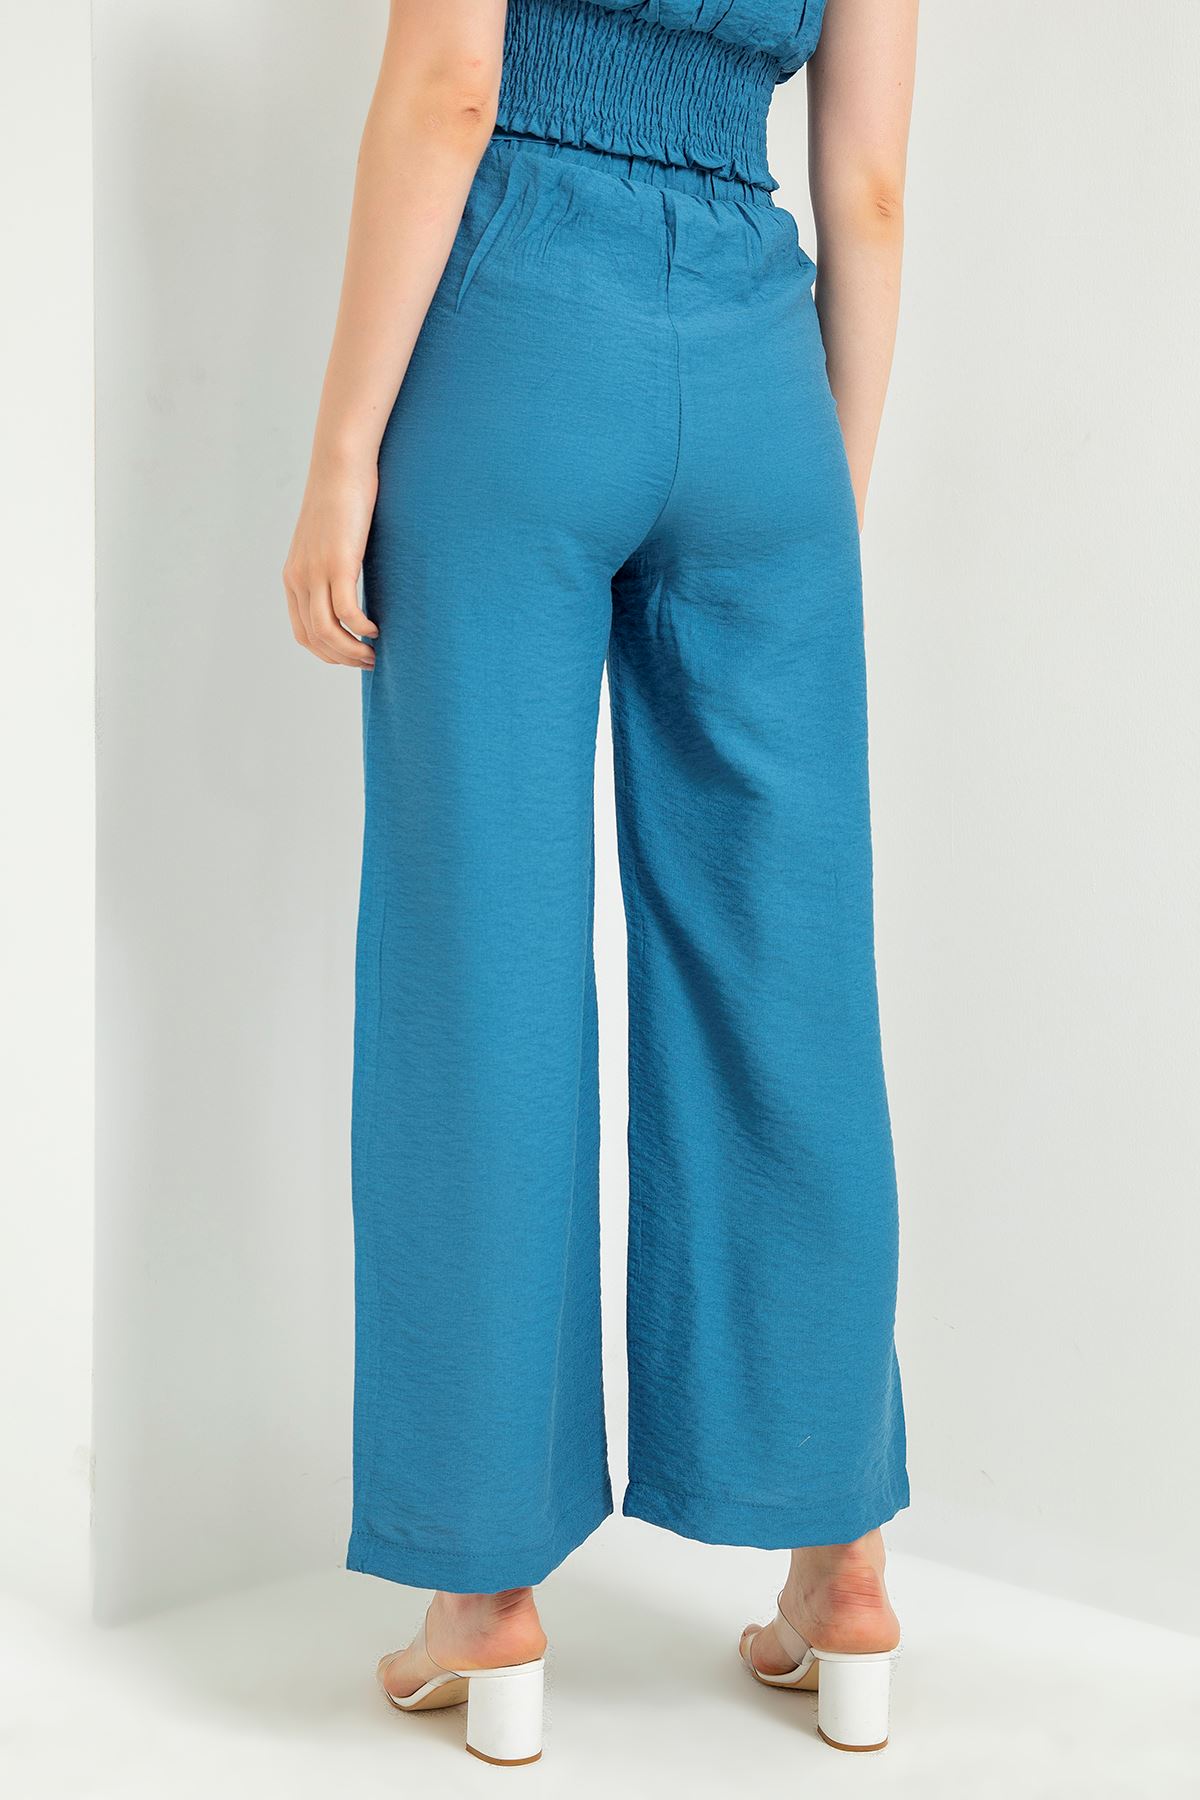 Linen Fabric Long Wide Belted Women'S Trouser - Navy Blue 